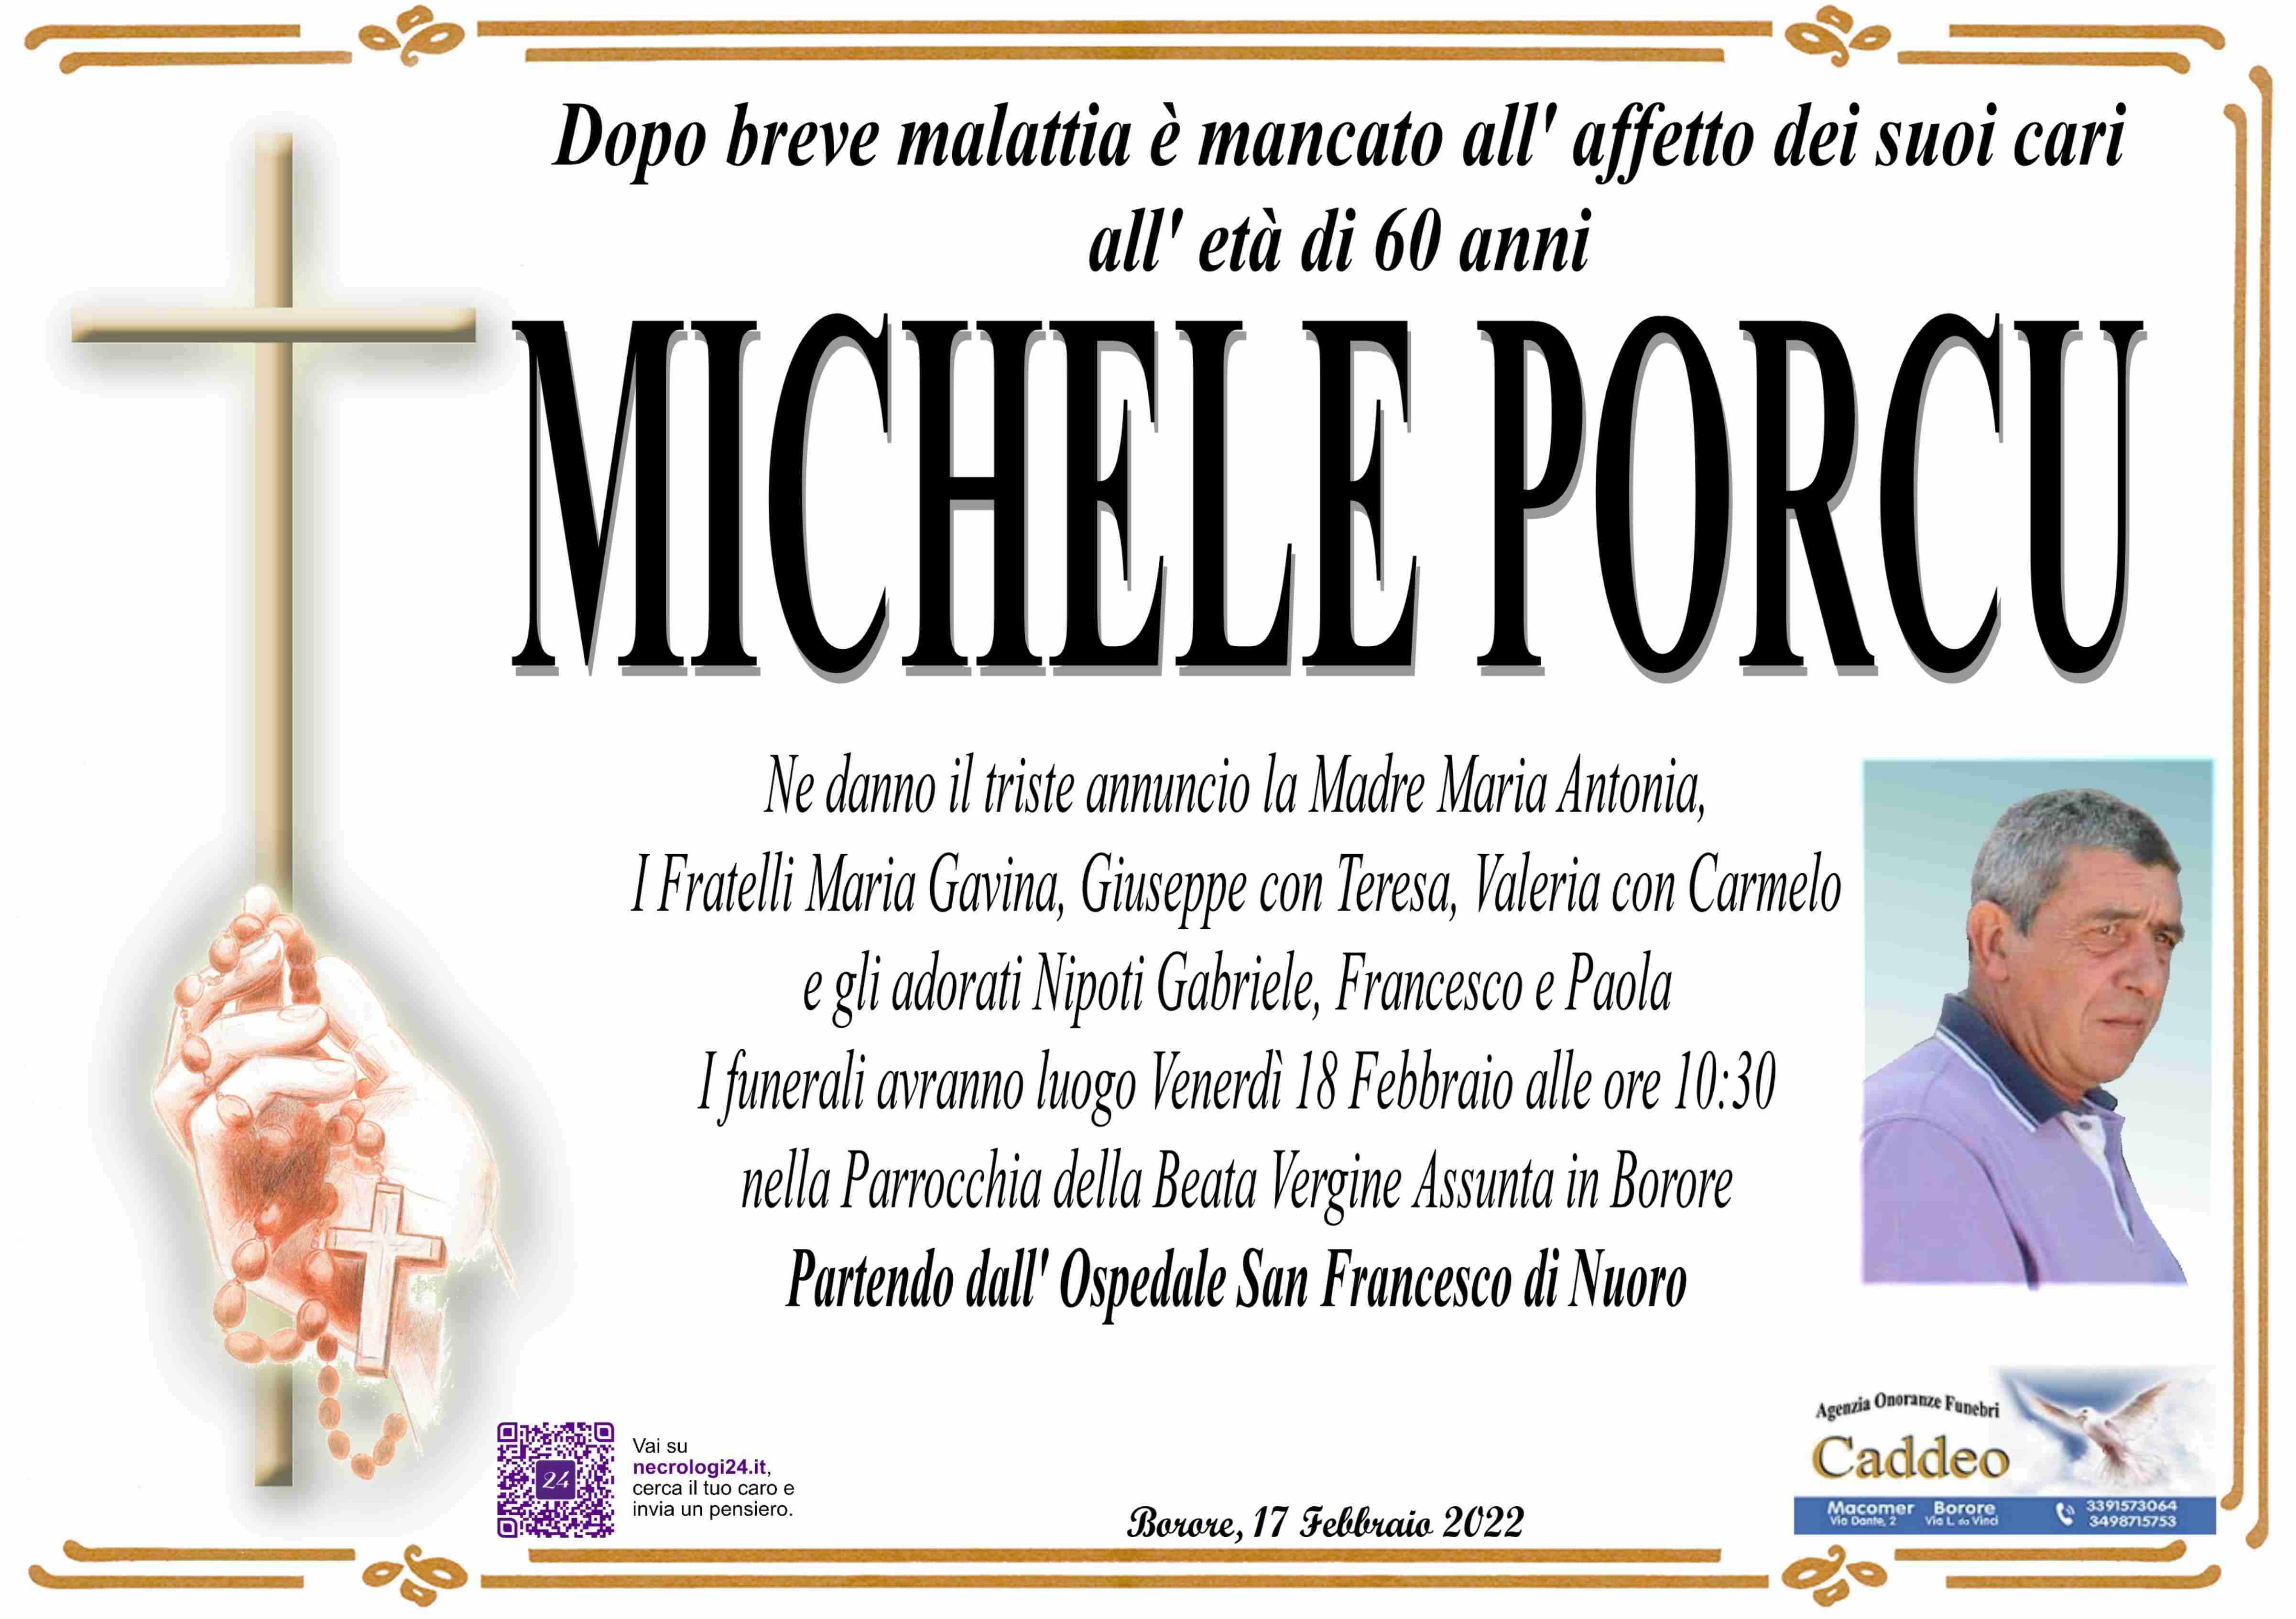 Michele Porcu